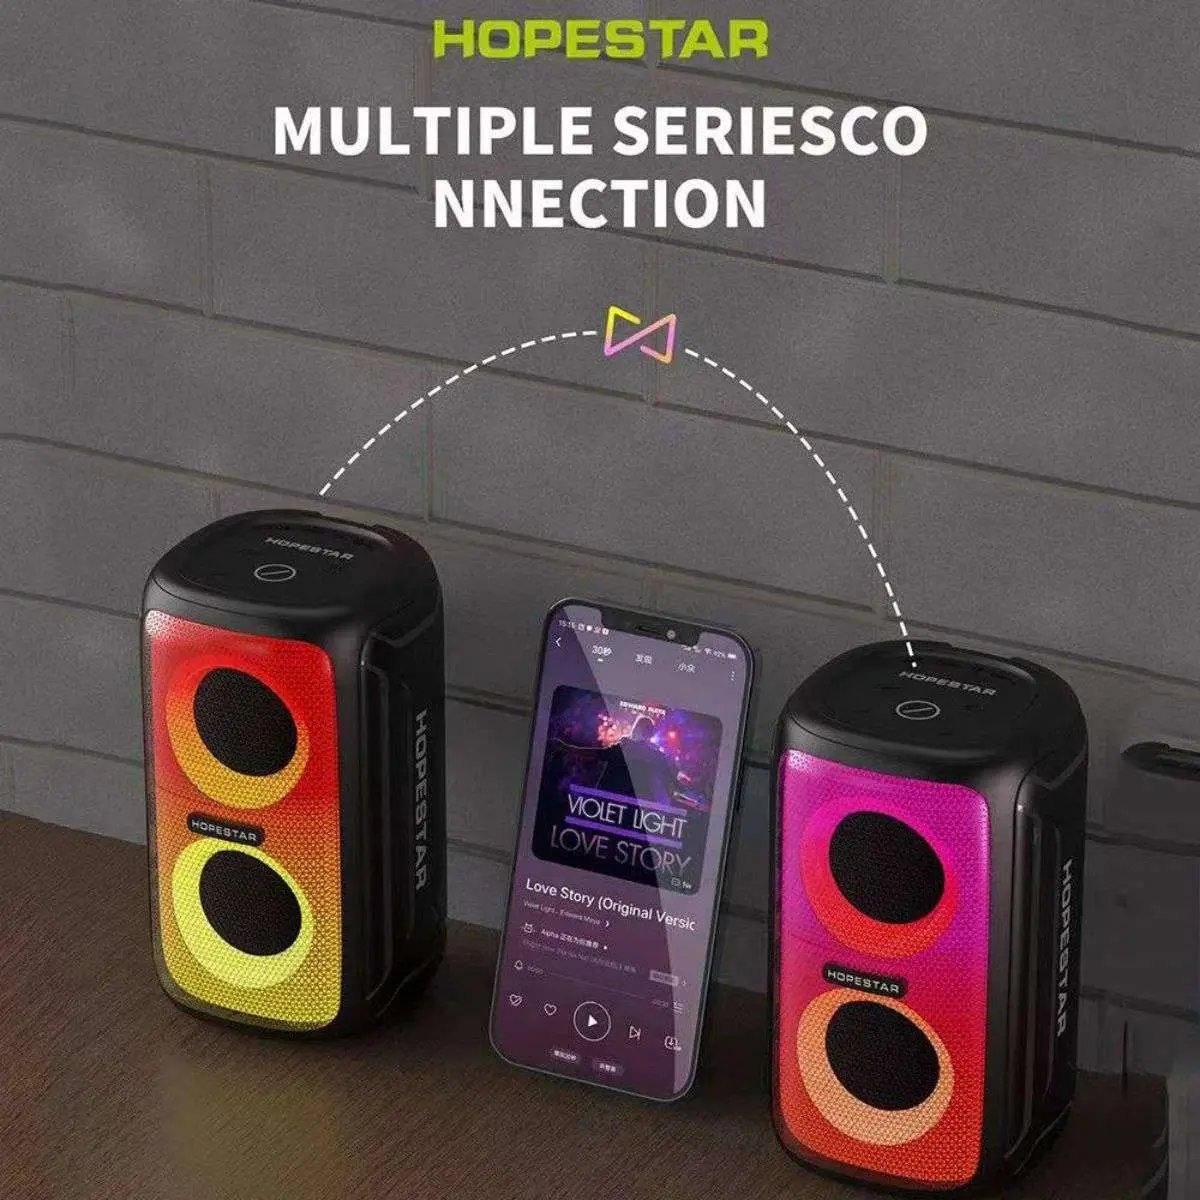 Party 110 Mini Wireless Speaker - Hugmie